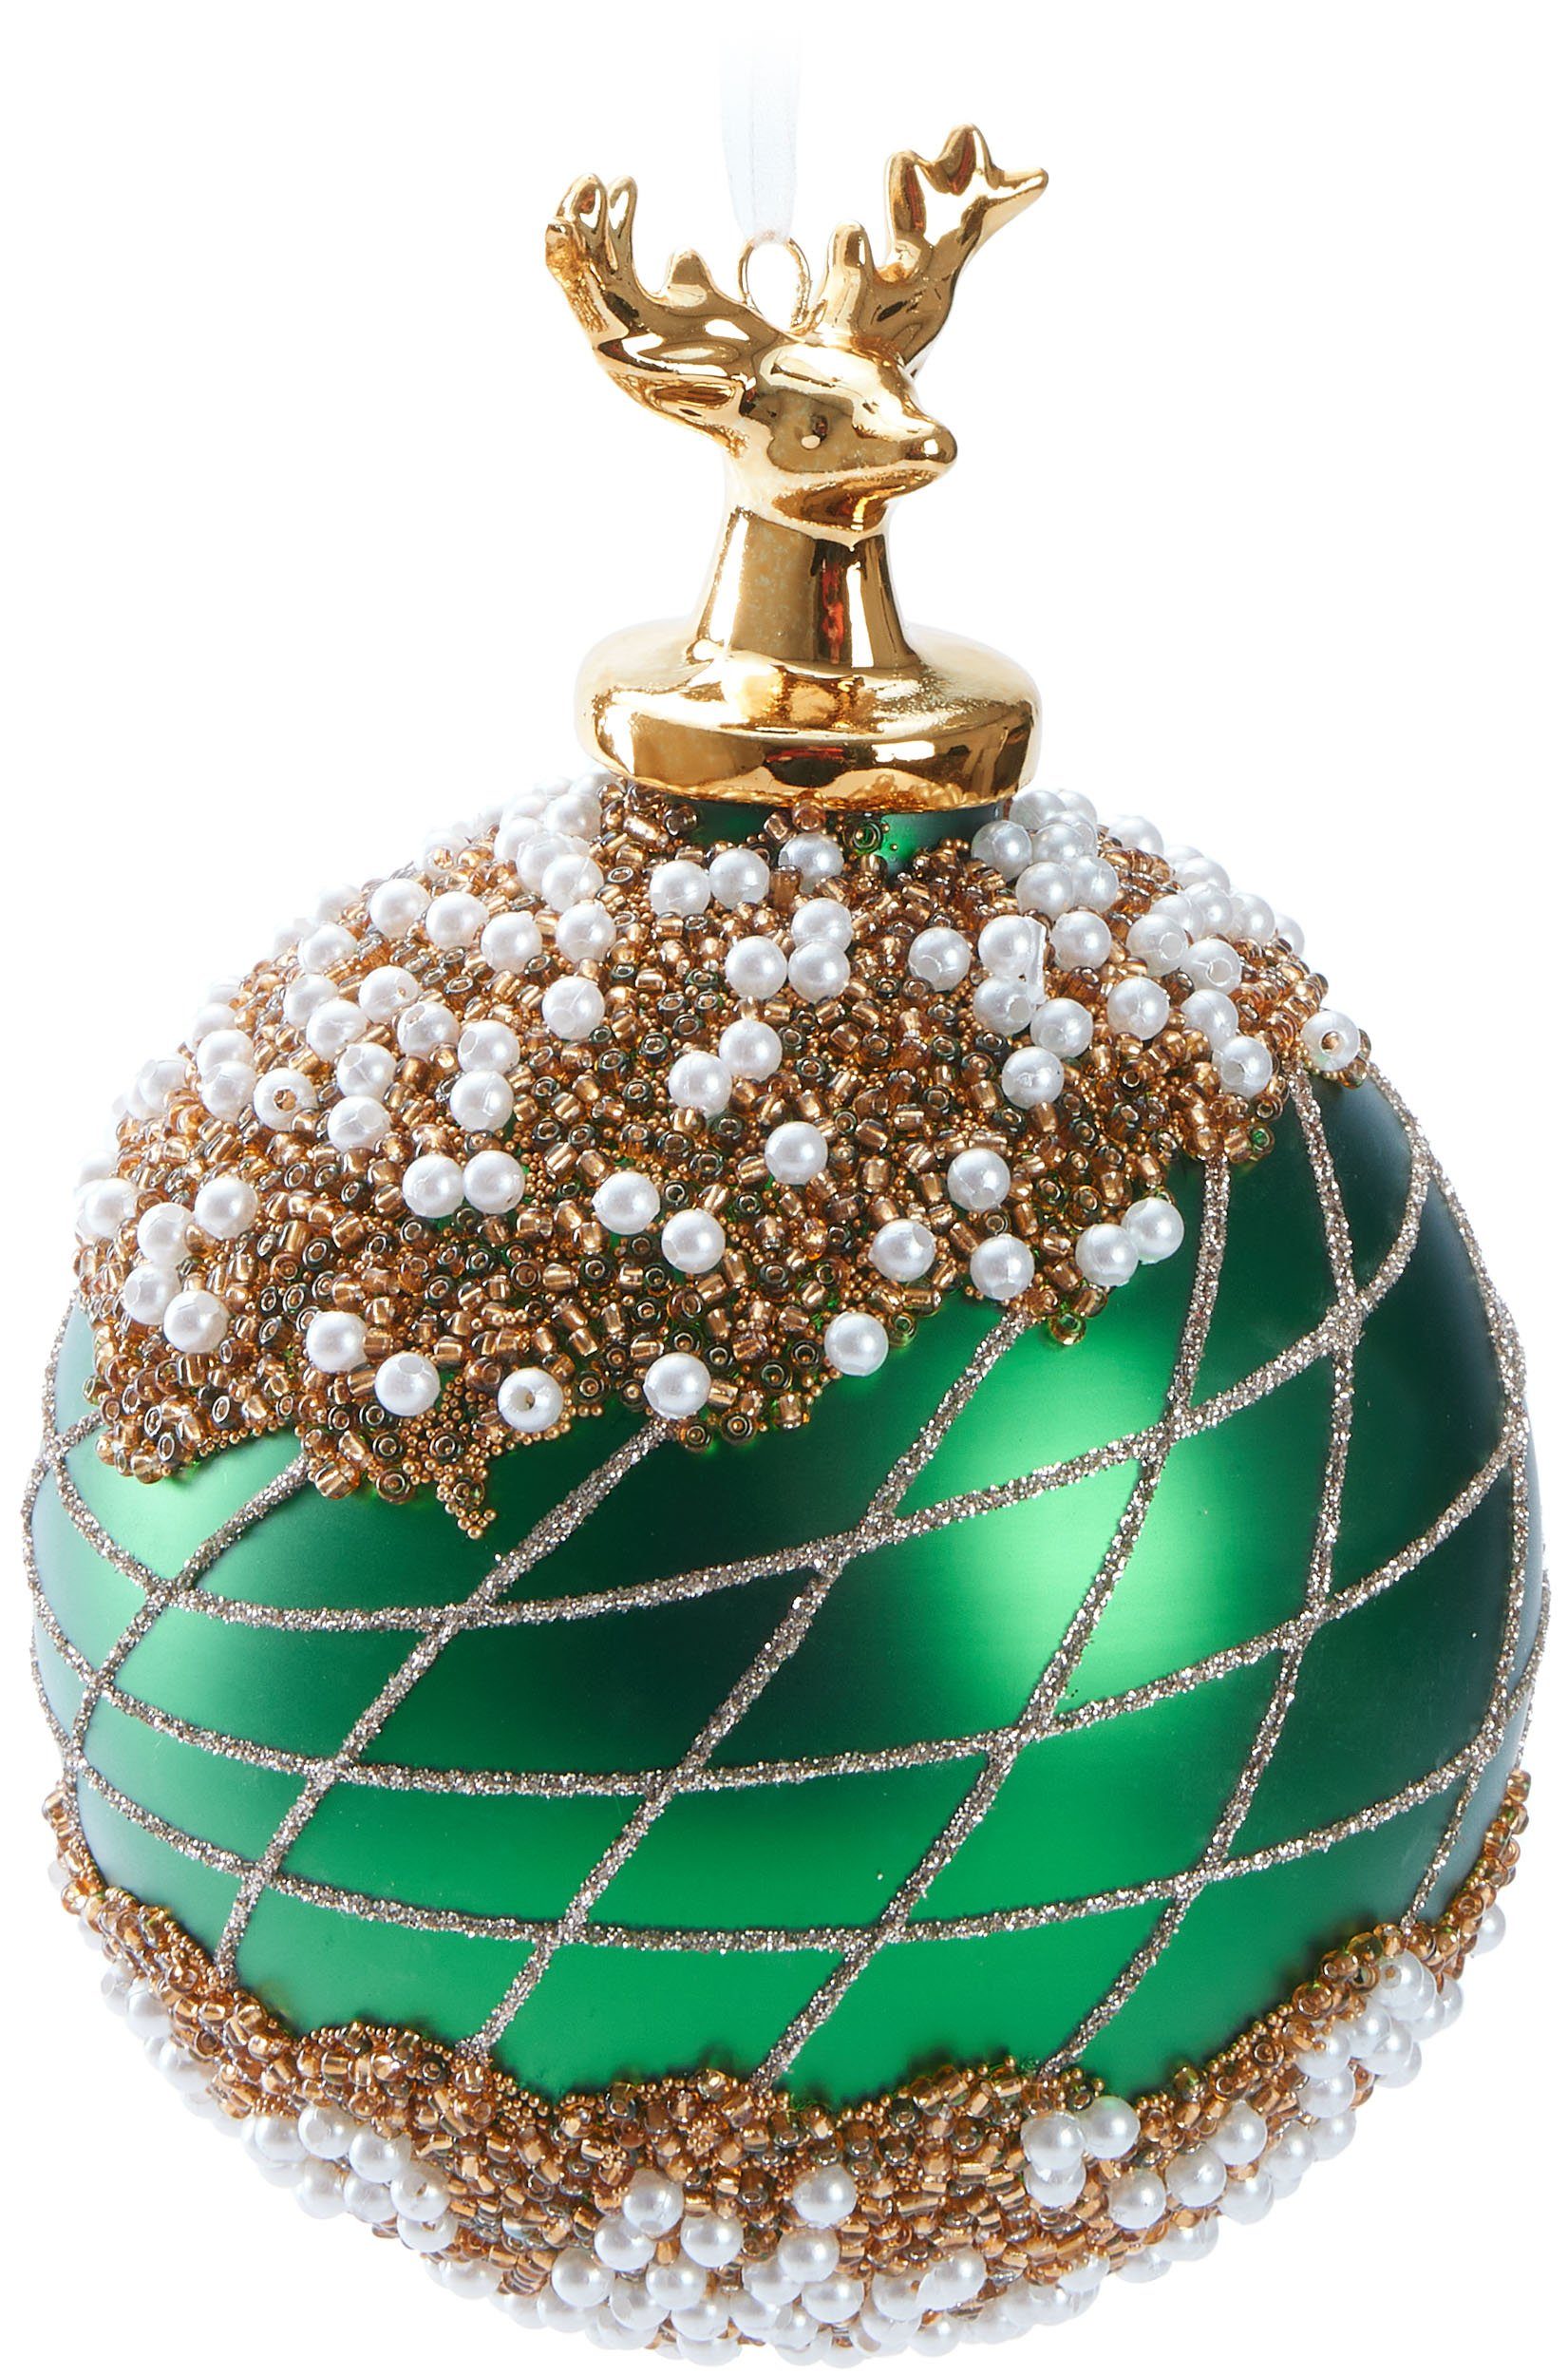 BRUBAKER Weihnachtsbaumkugel Premium Weihnachtskugel mit Porzellan Figur - Handdekorierte Baumkugel (1 St), 10 cm Christbaumschmuck aus Glas mit Perlen Dekorationen und Glitzer Grün